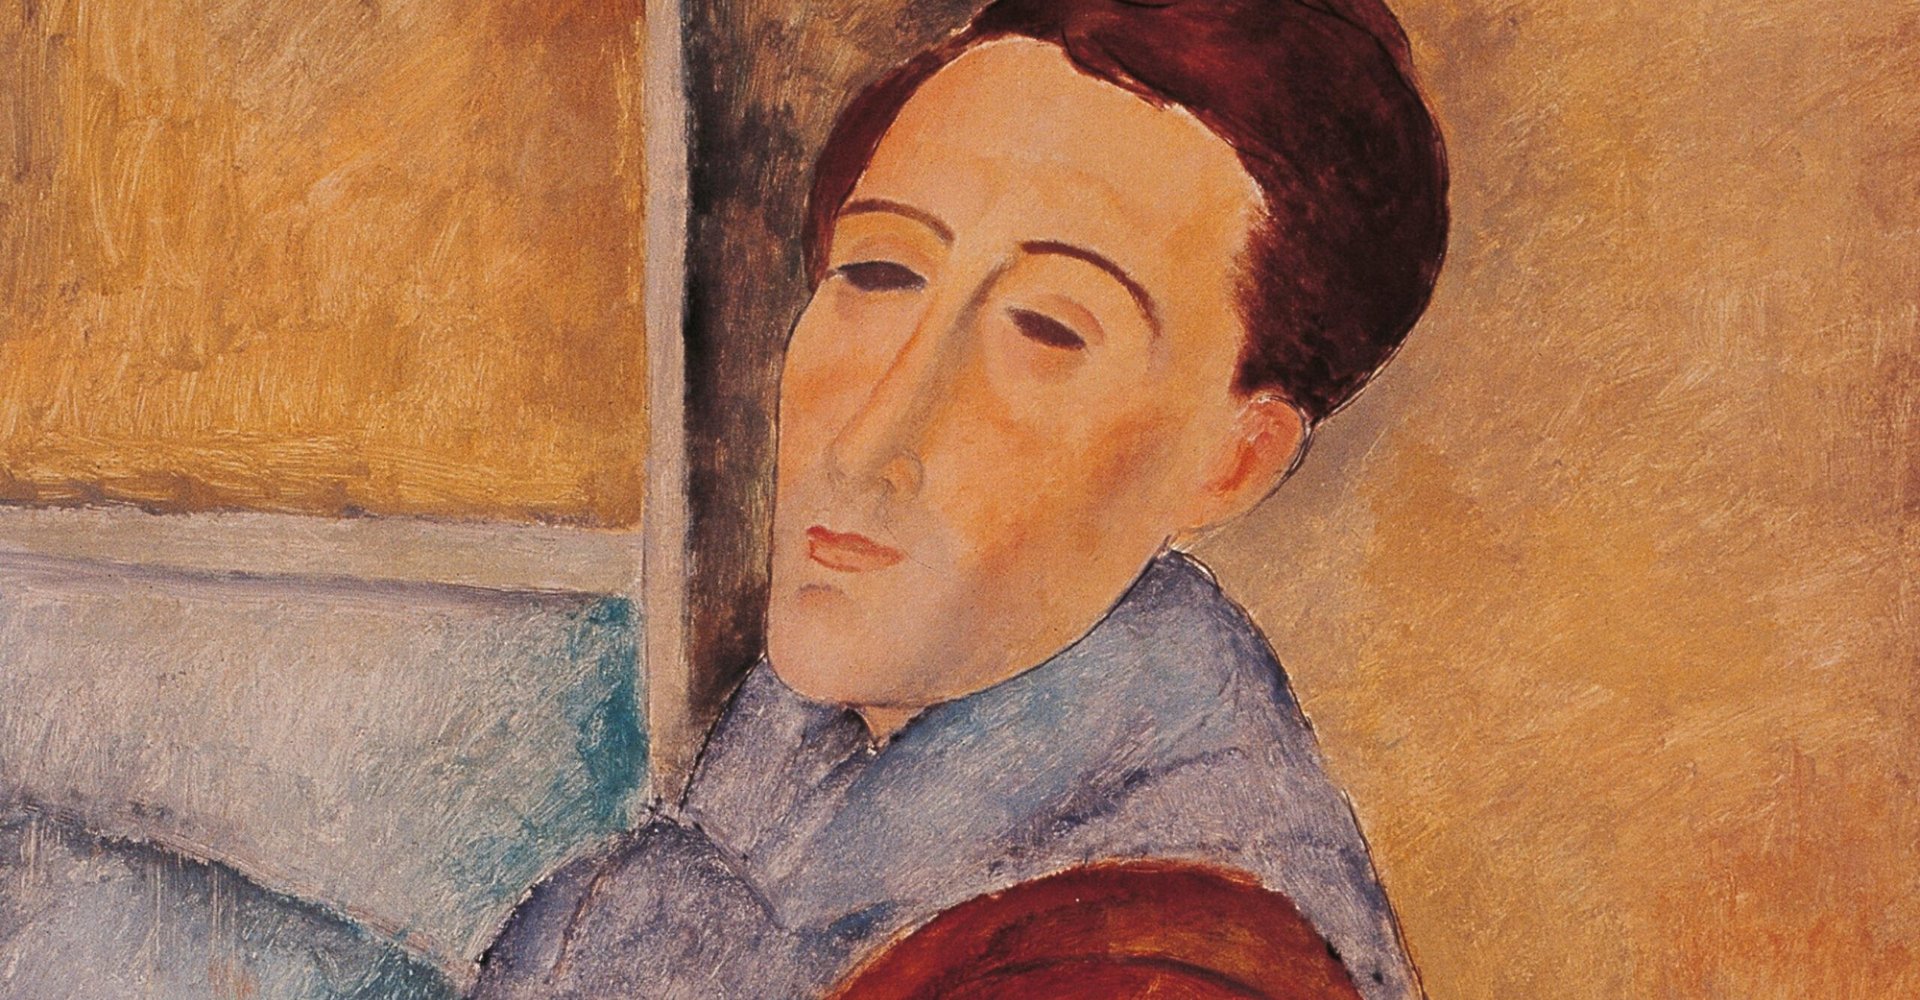 Autoritratto di Modigliani